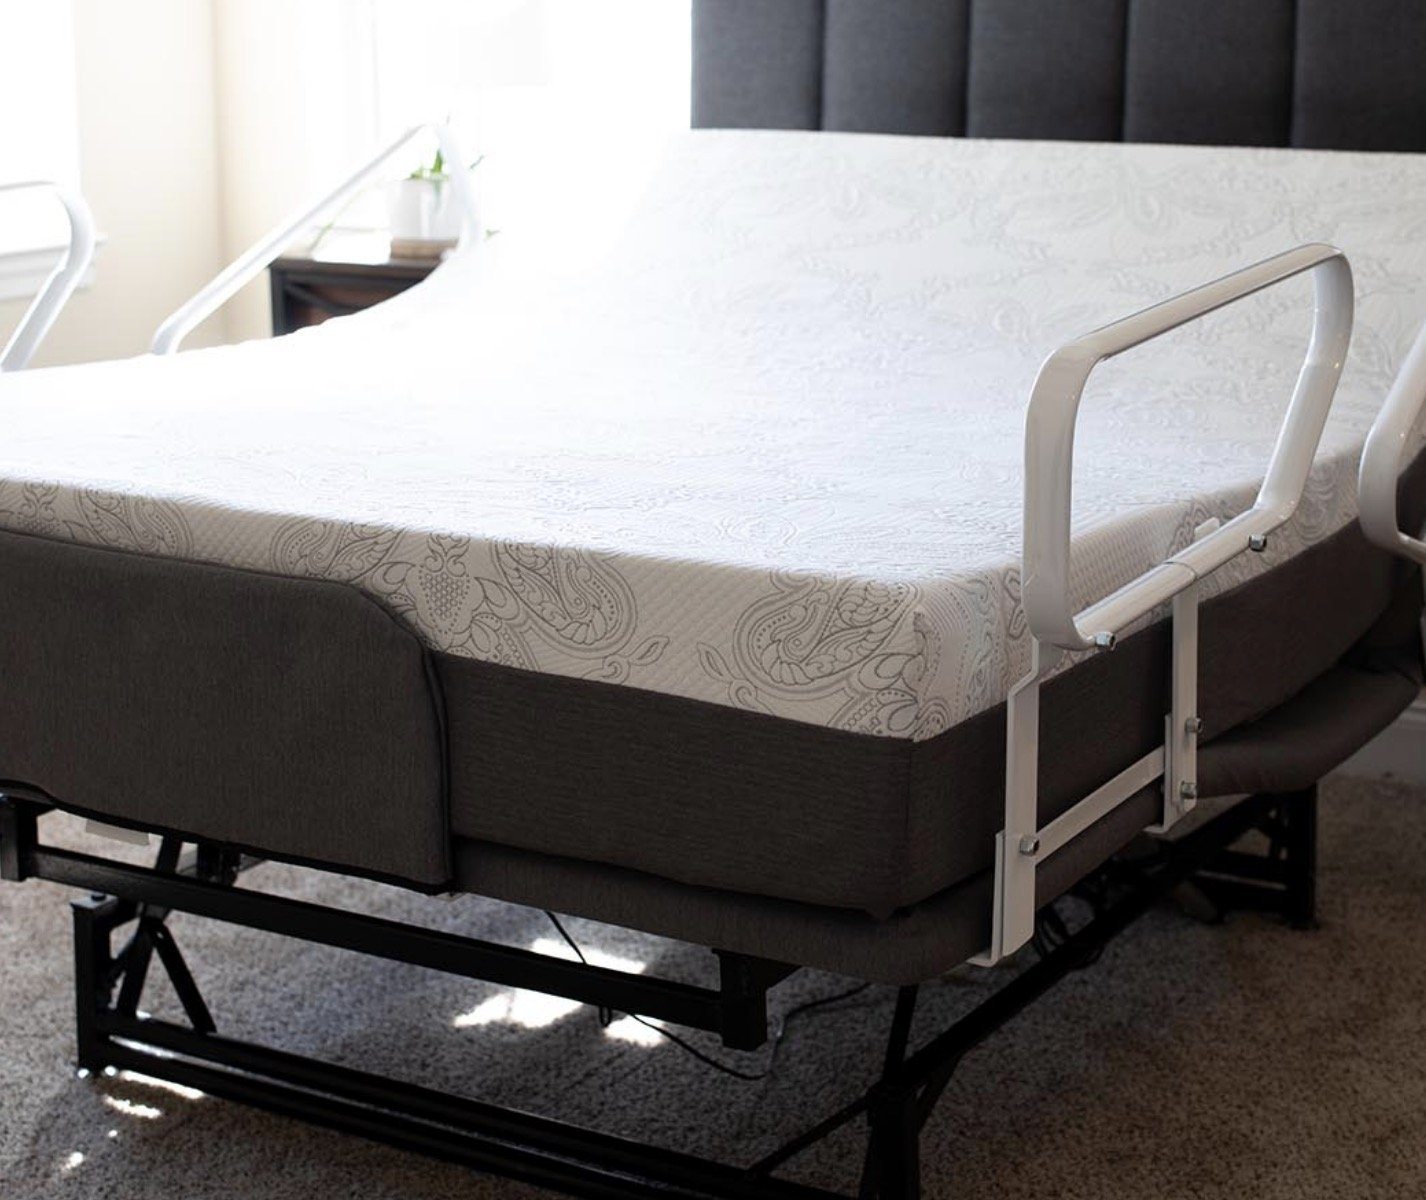 iDealBed 4i Custom Adjustable Bed Base, Wireless, Massage, Zero